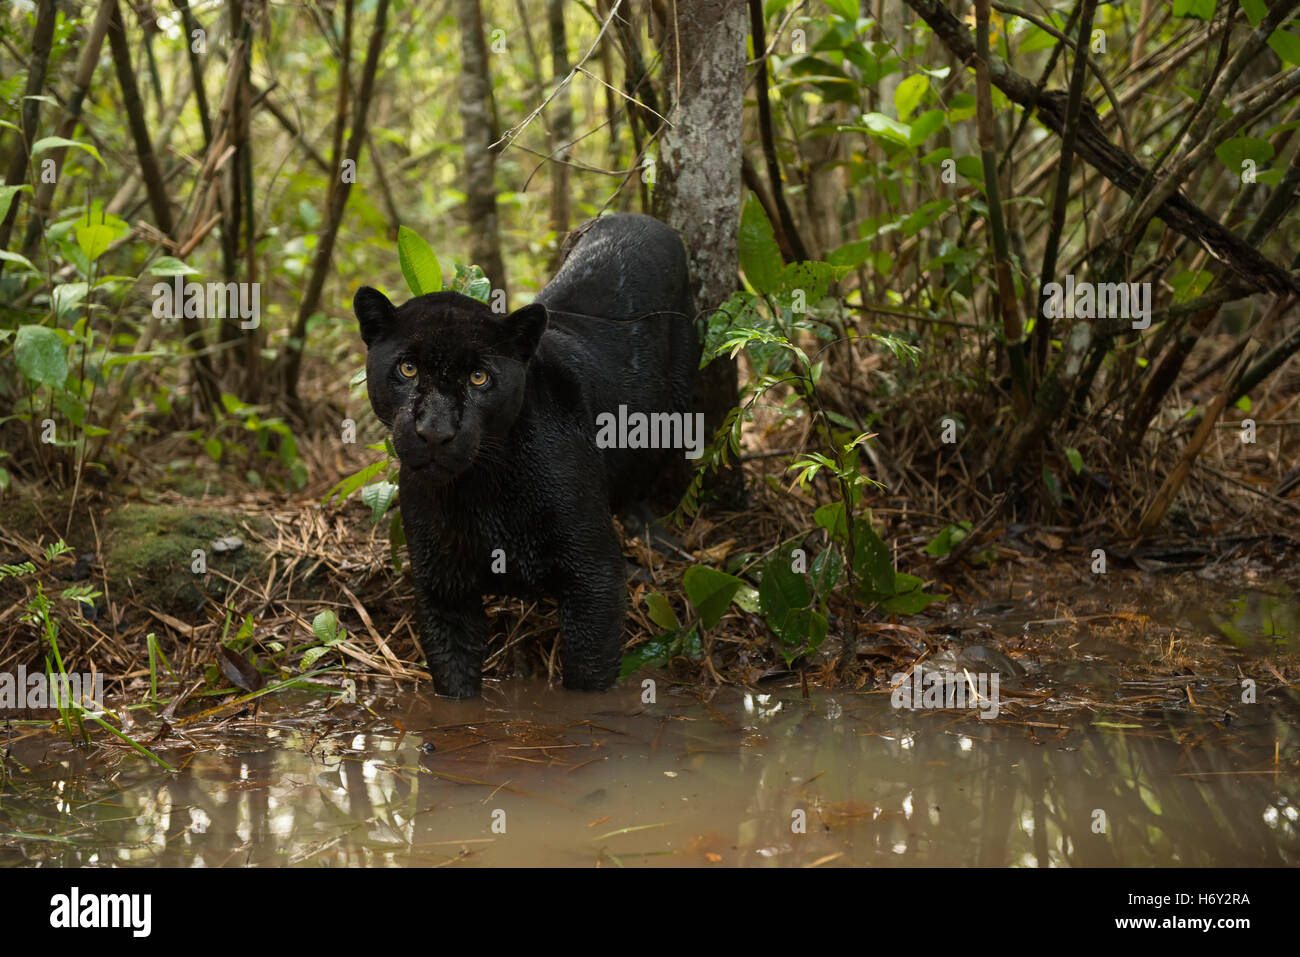 A black Jaguar explores a water creek inside the rainforest Stock Photo